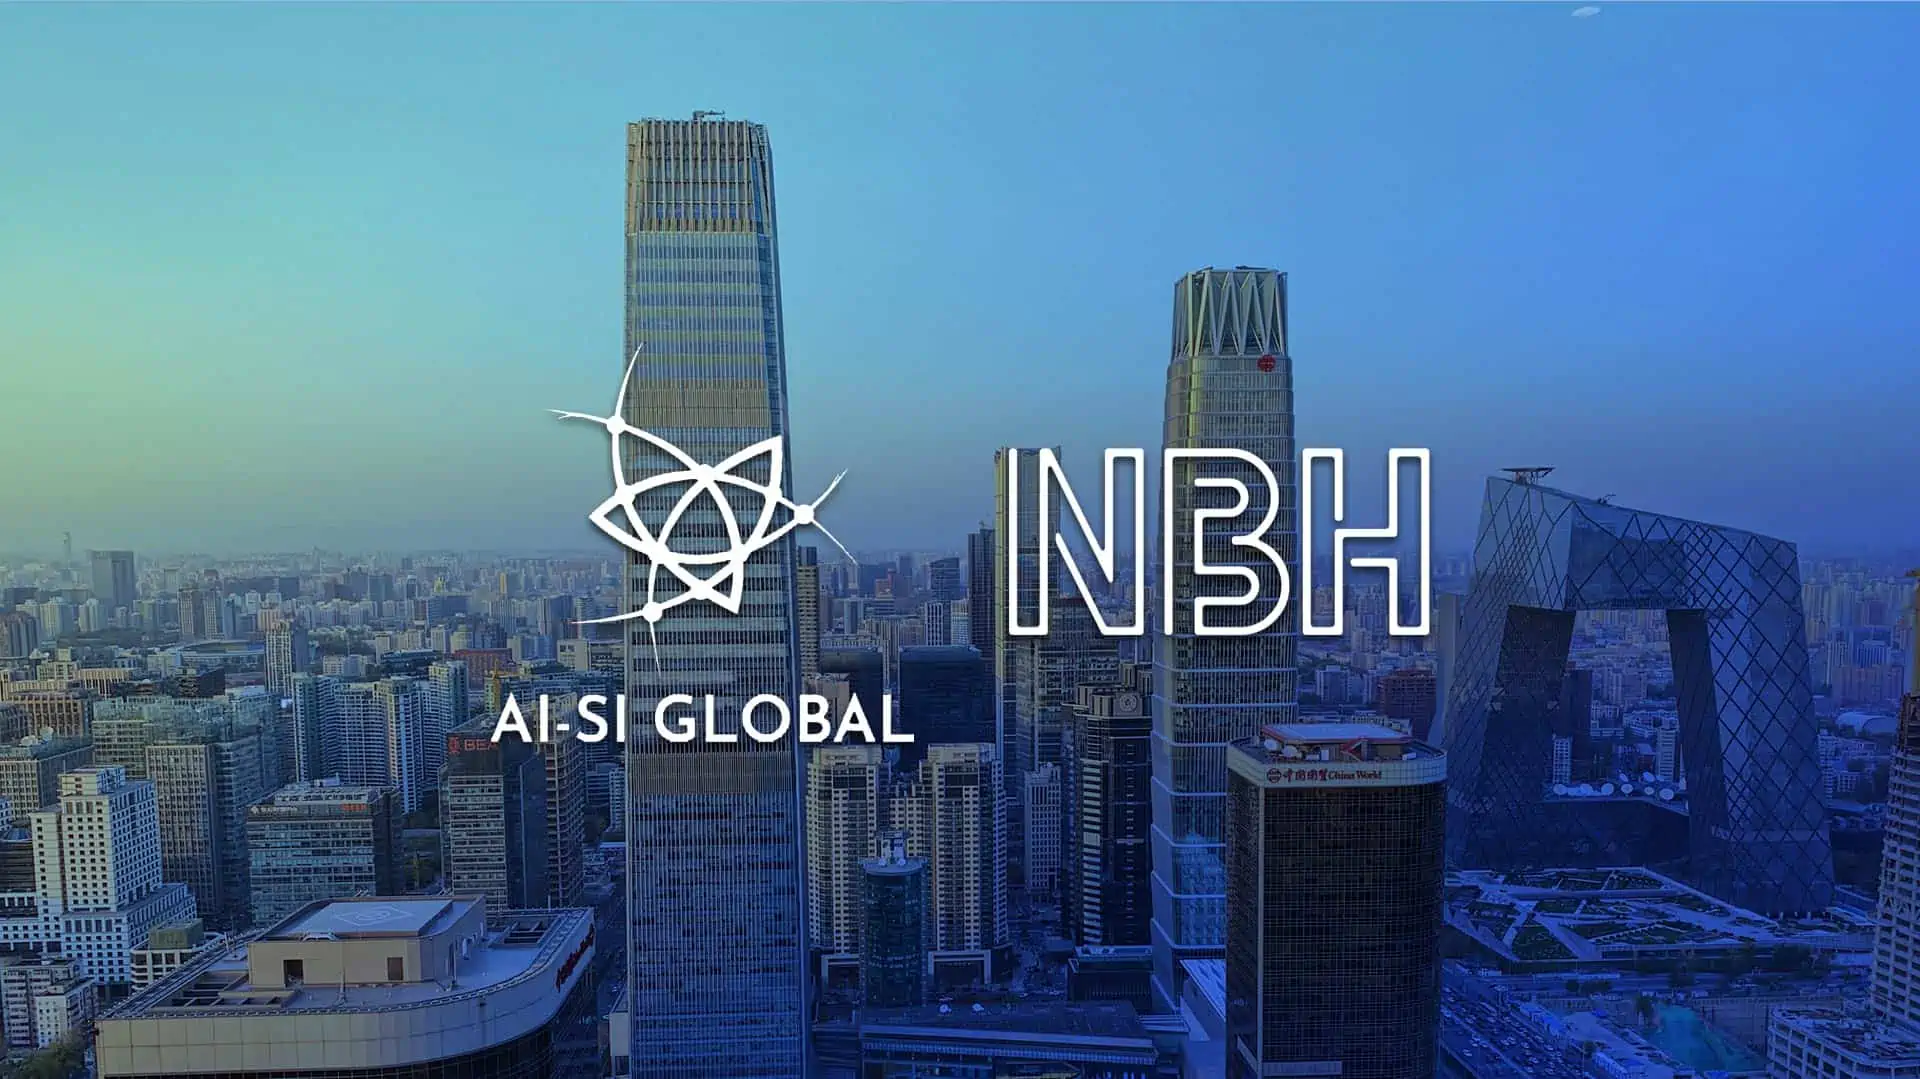 AI-SI Global ja NBH tuovat yhdessä vahvoja brändejä Sloveniasta, Kroatiasta ja Serbiasta Kiinaan.